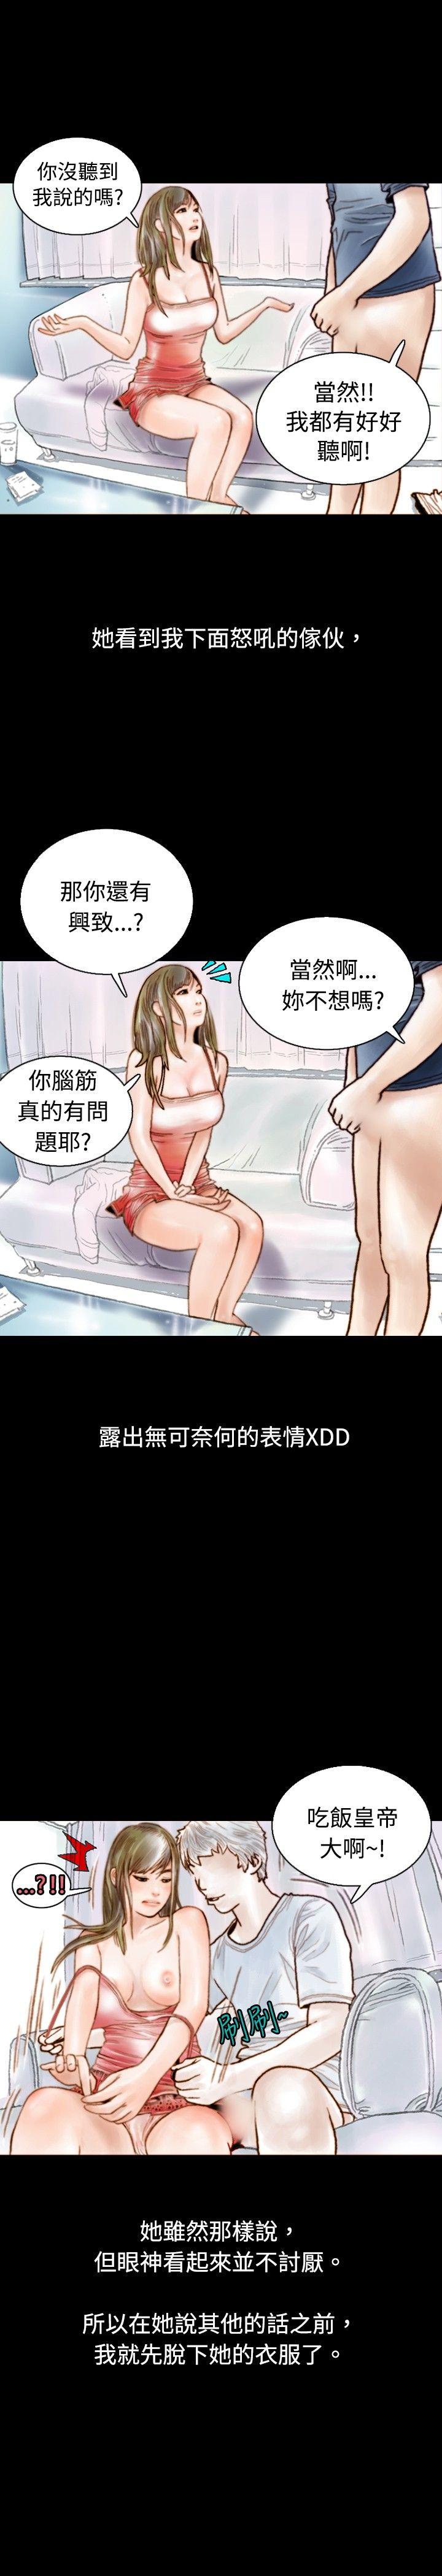 秘密Story  危险关係(中) 漫画图片13.jpg